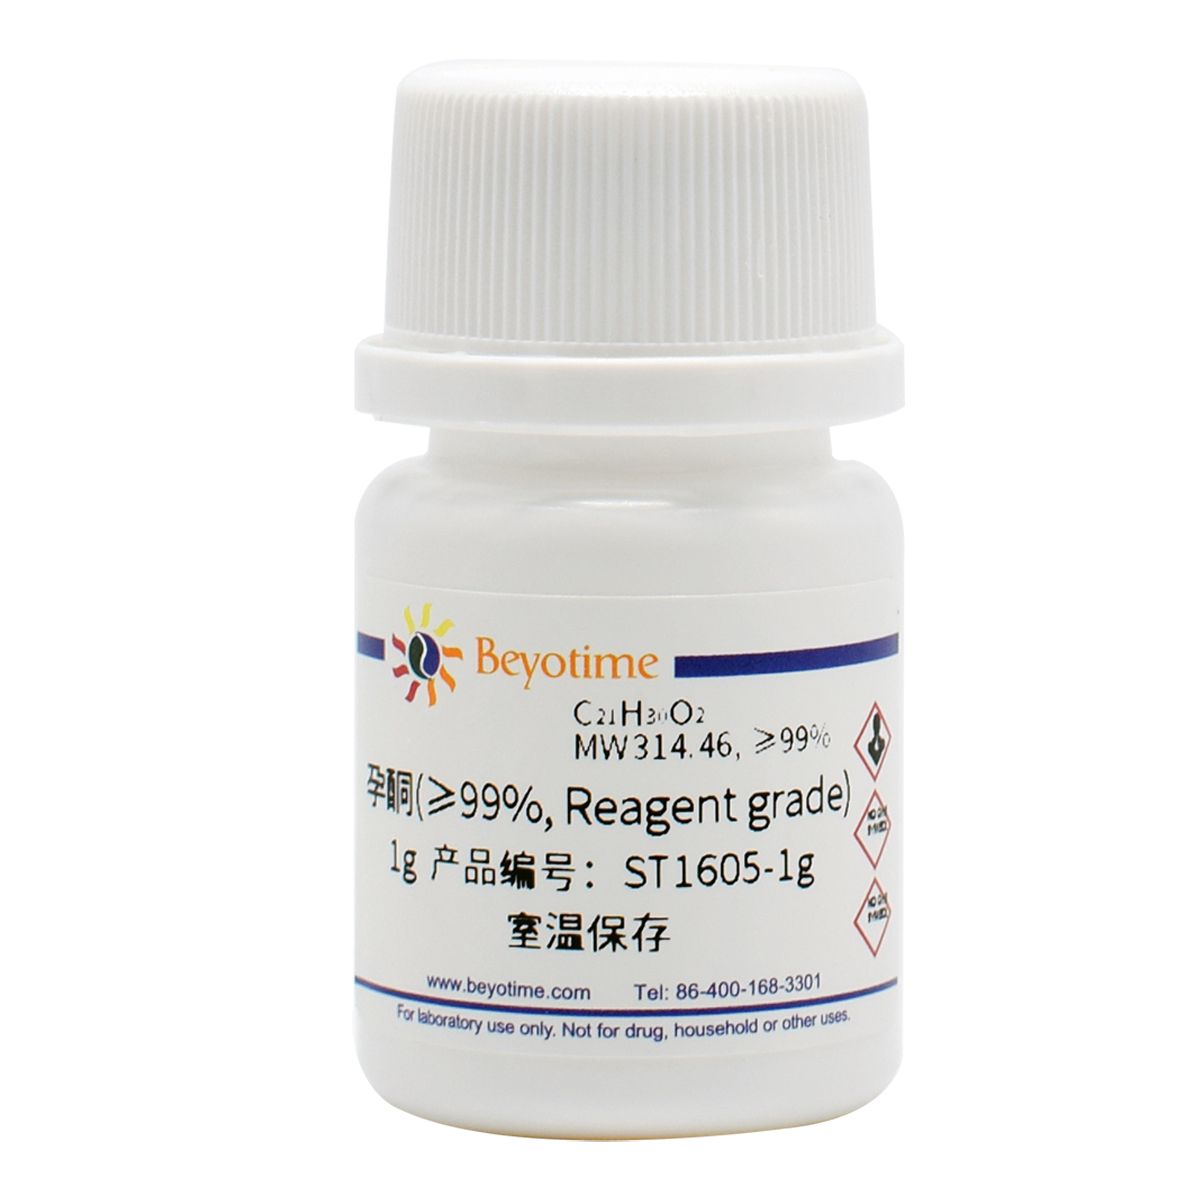 孕酮(≥99%, Reagent grade)